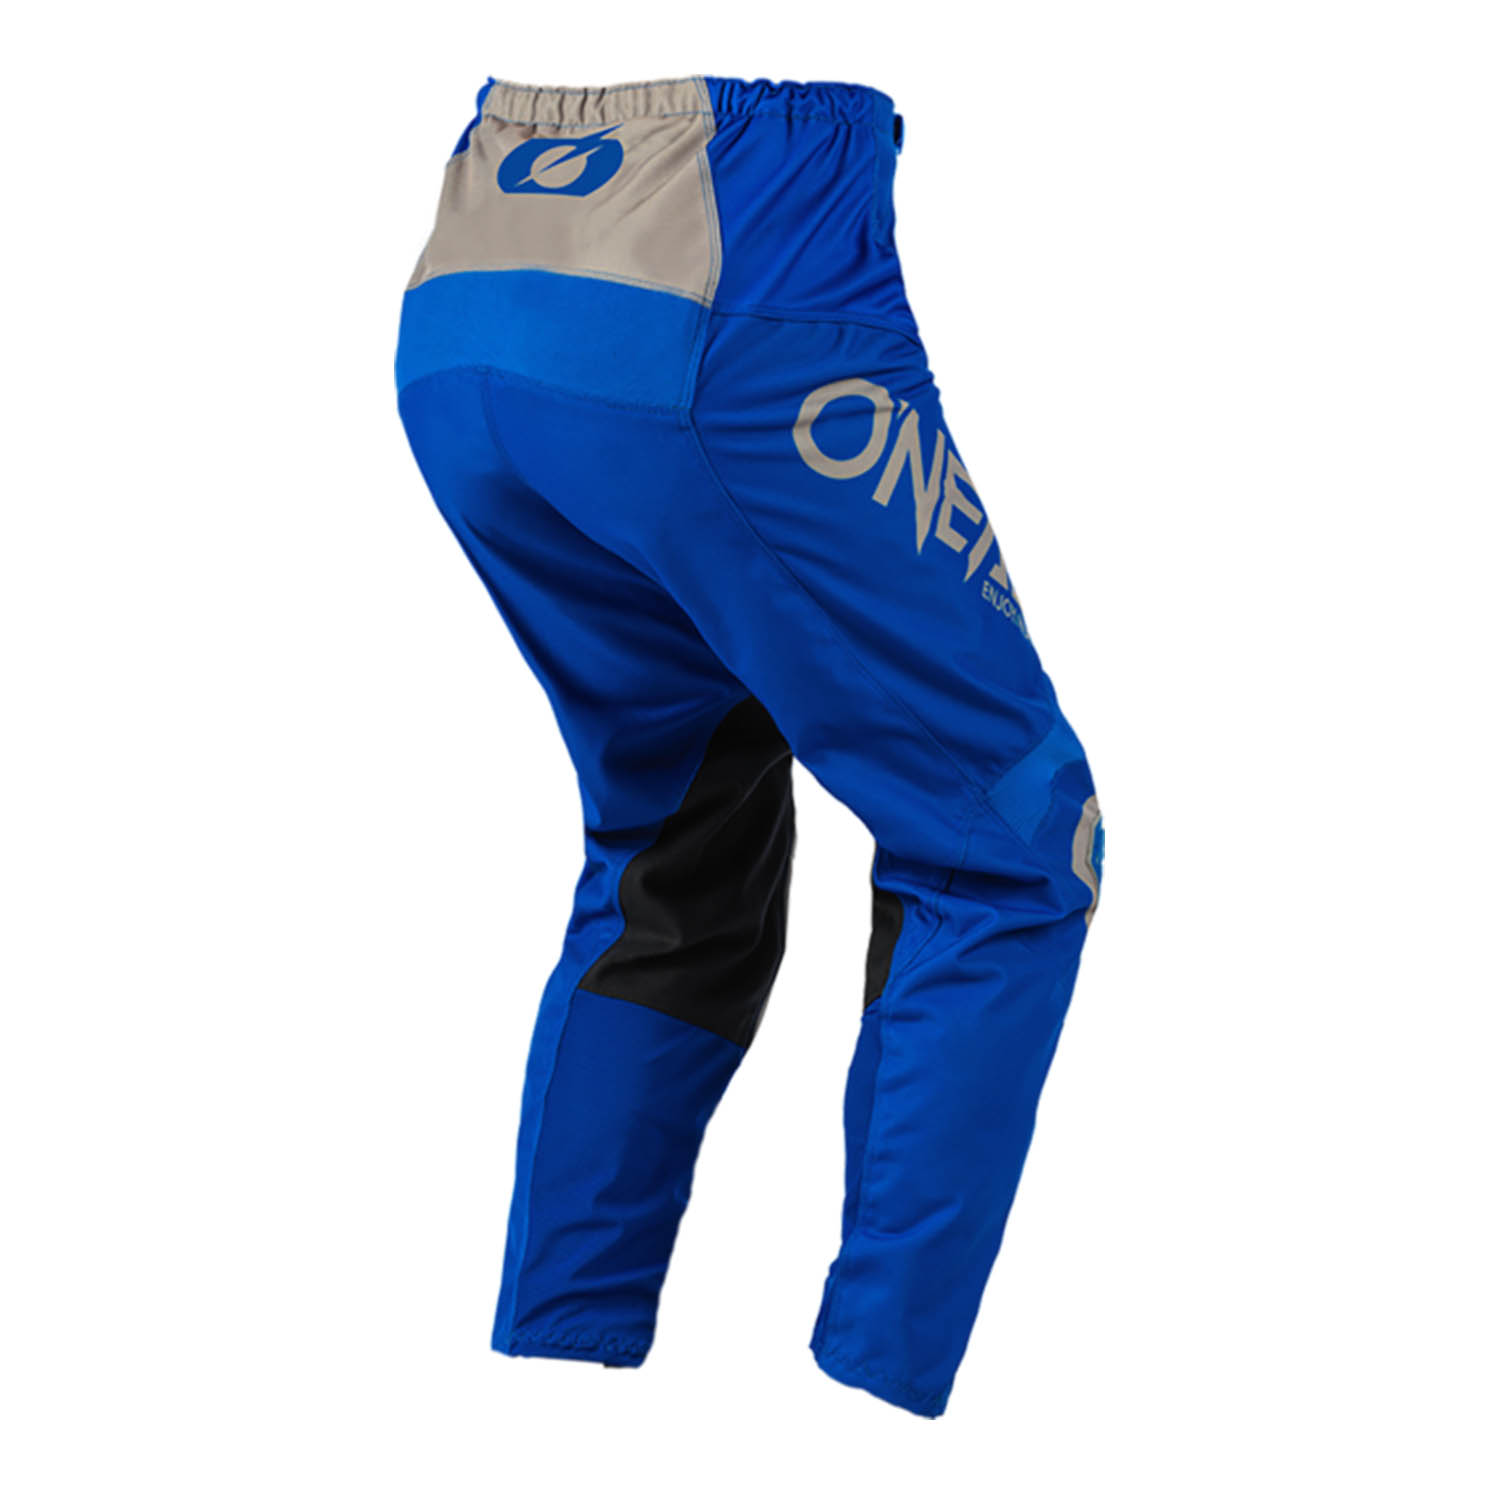 Штаны для мотокросса O'NEAL MATRIX PANTS RIDEWEAR сине-серого цвета, вид сзади купить по низкой цене